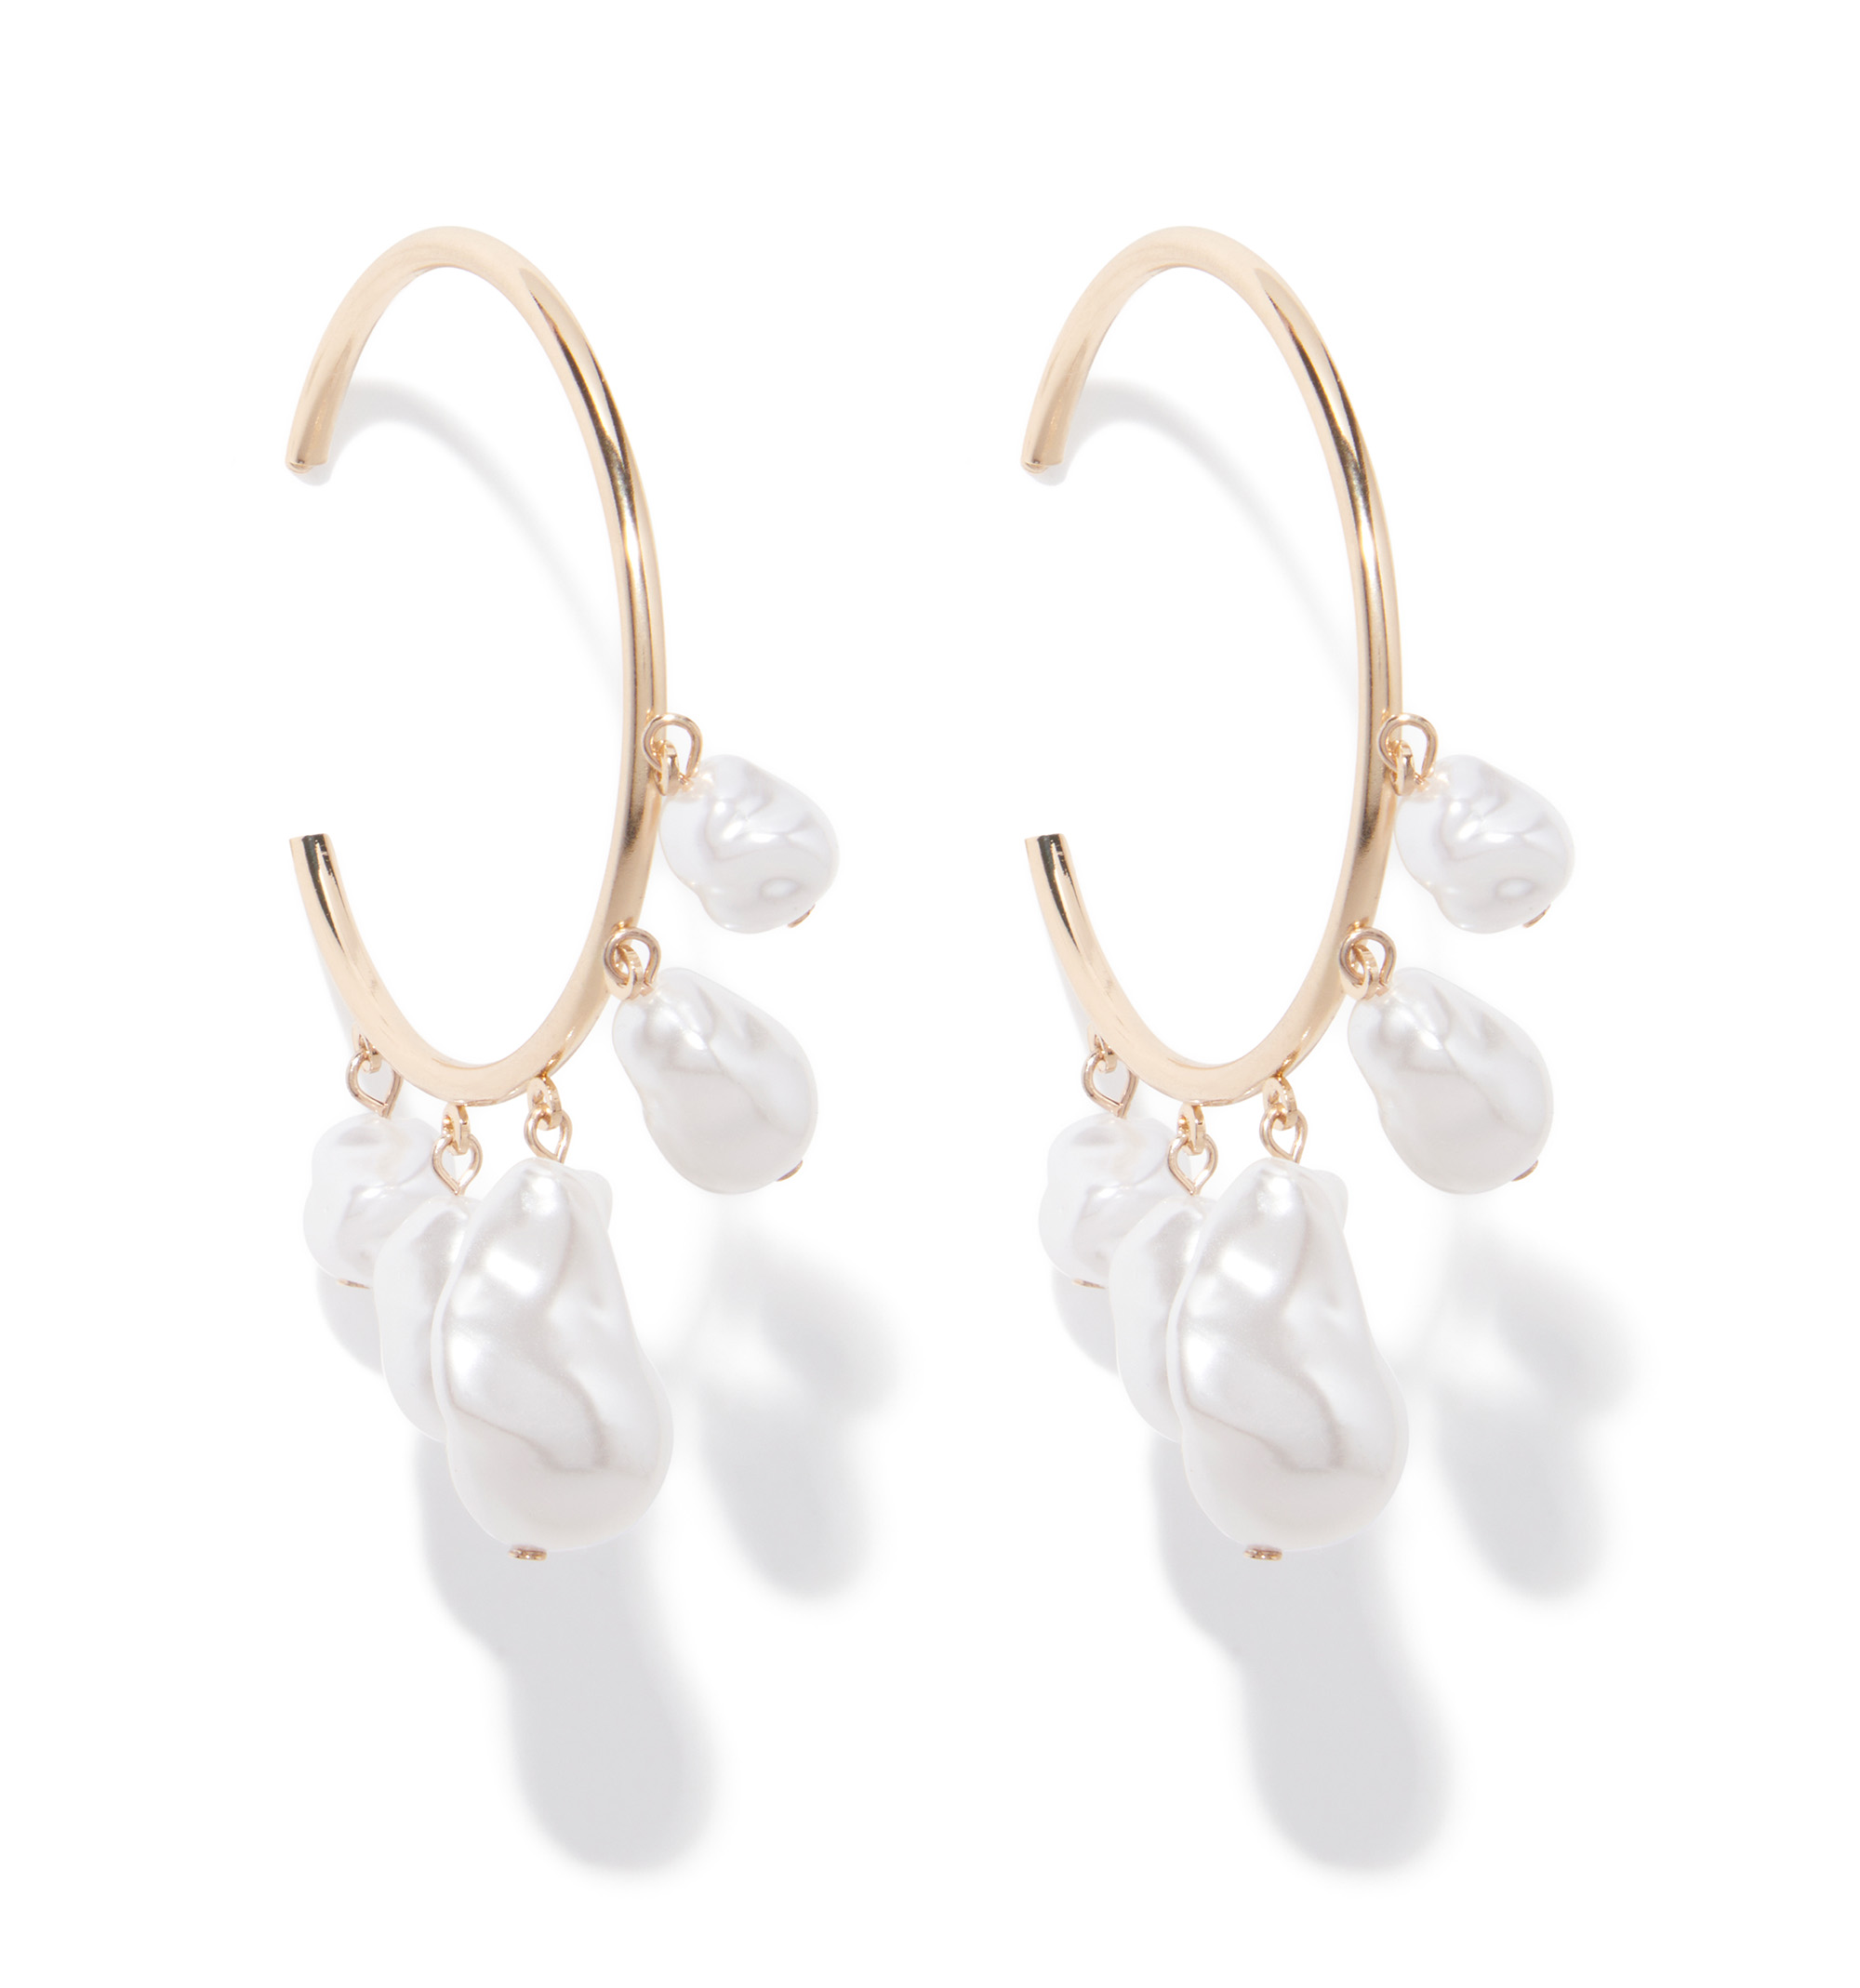 Buy White Earrings for Women by Silvermerc Designs Online | Ajio.com